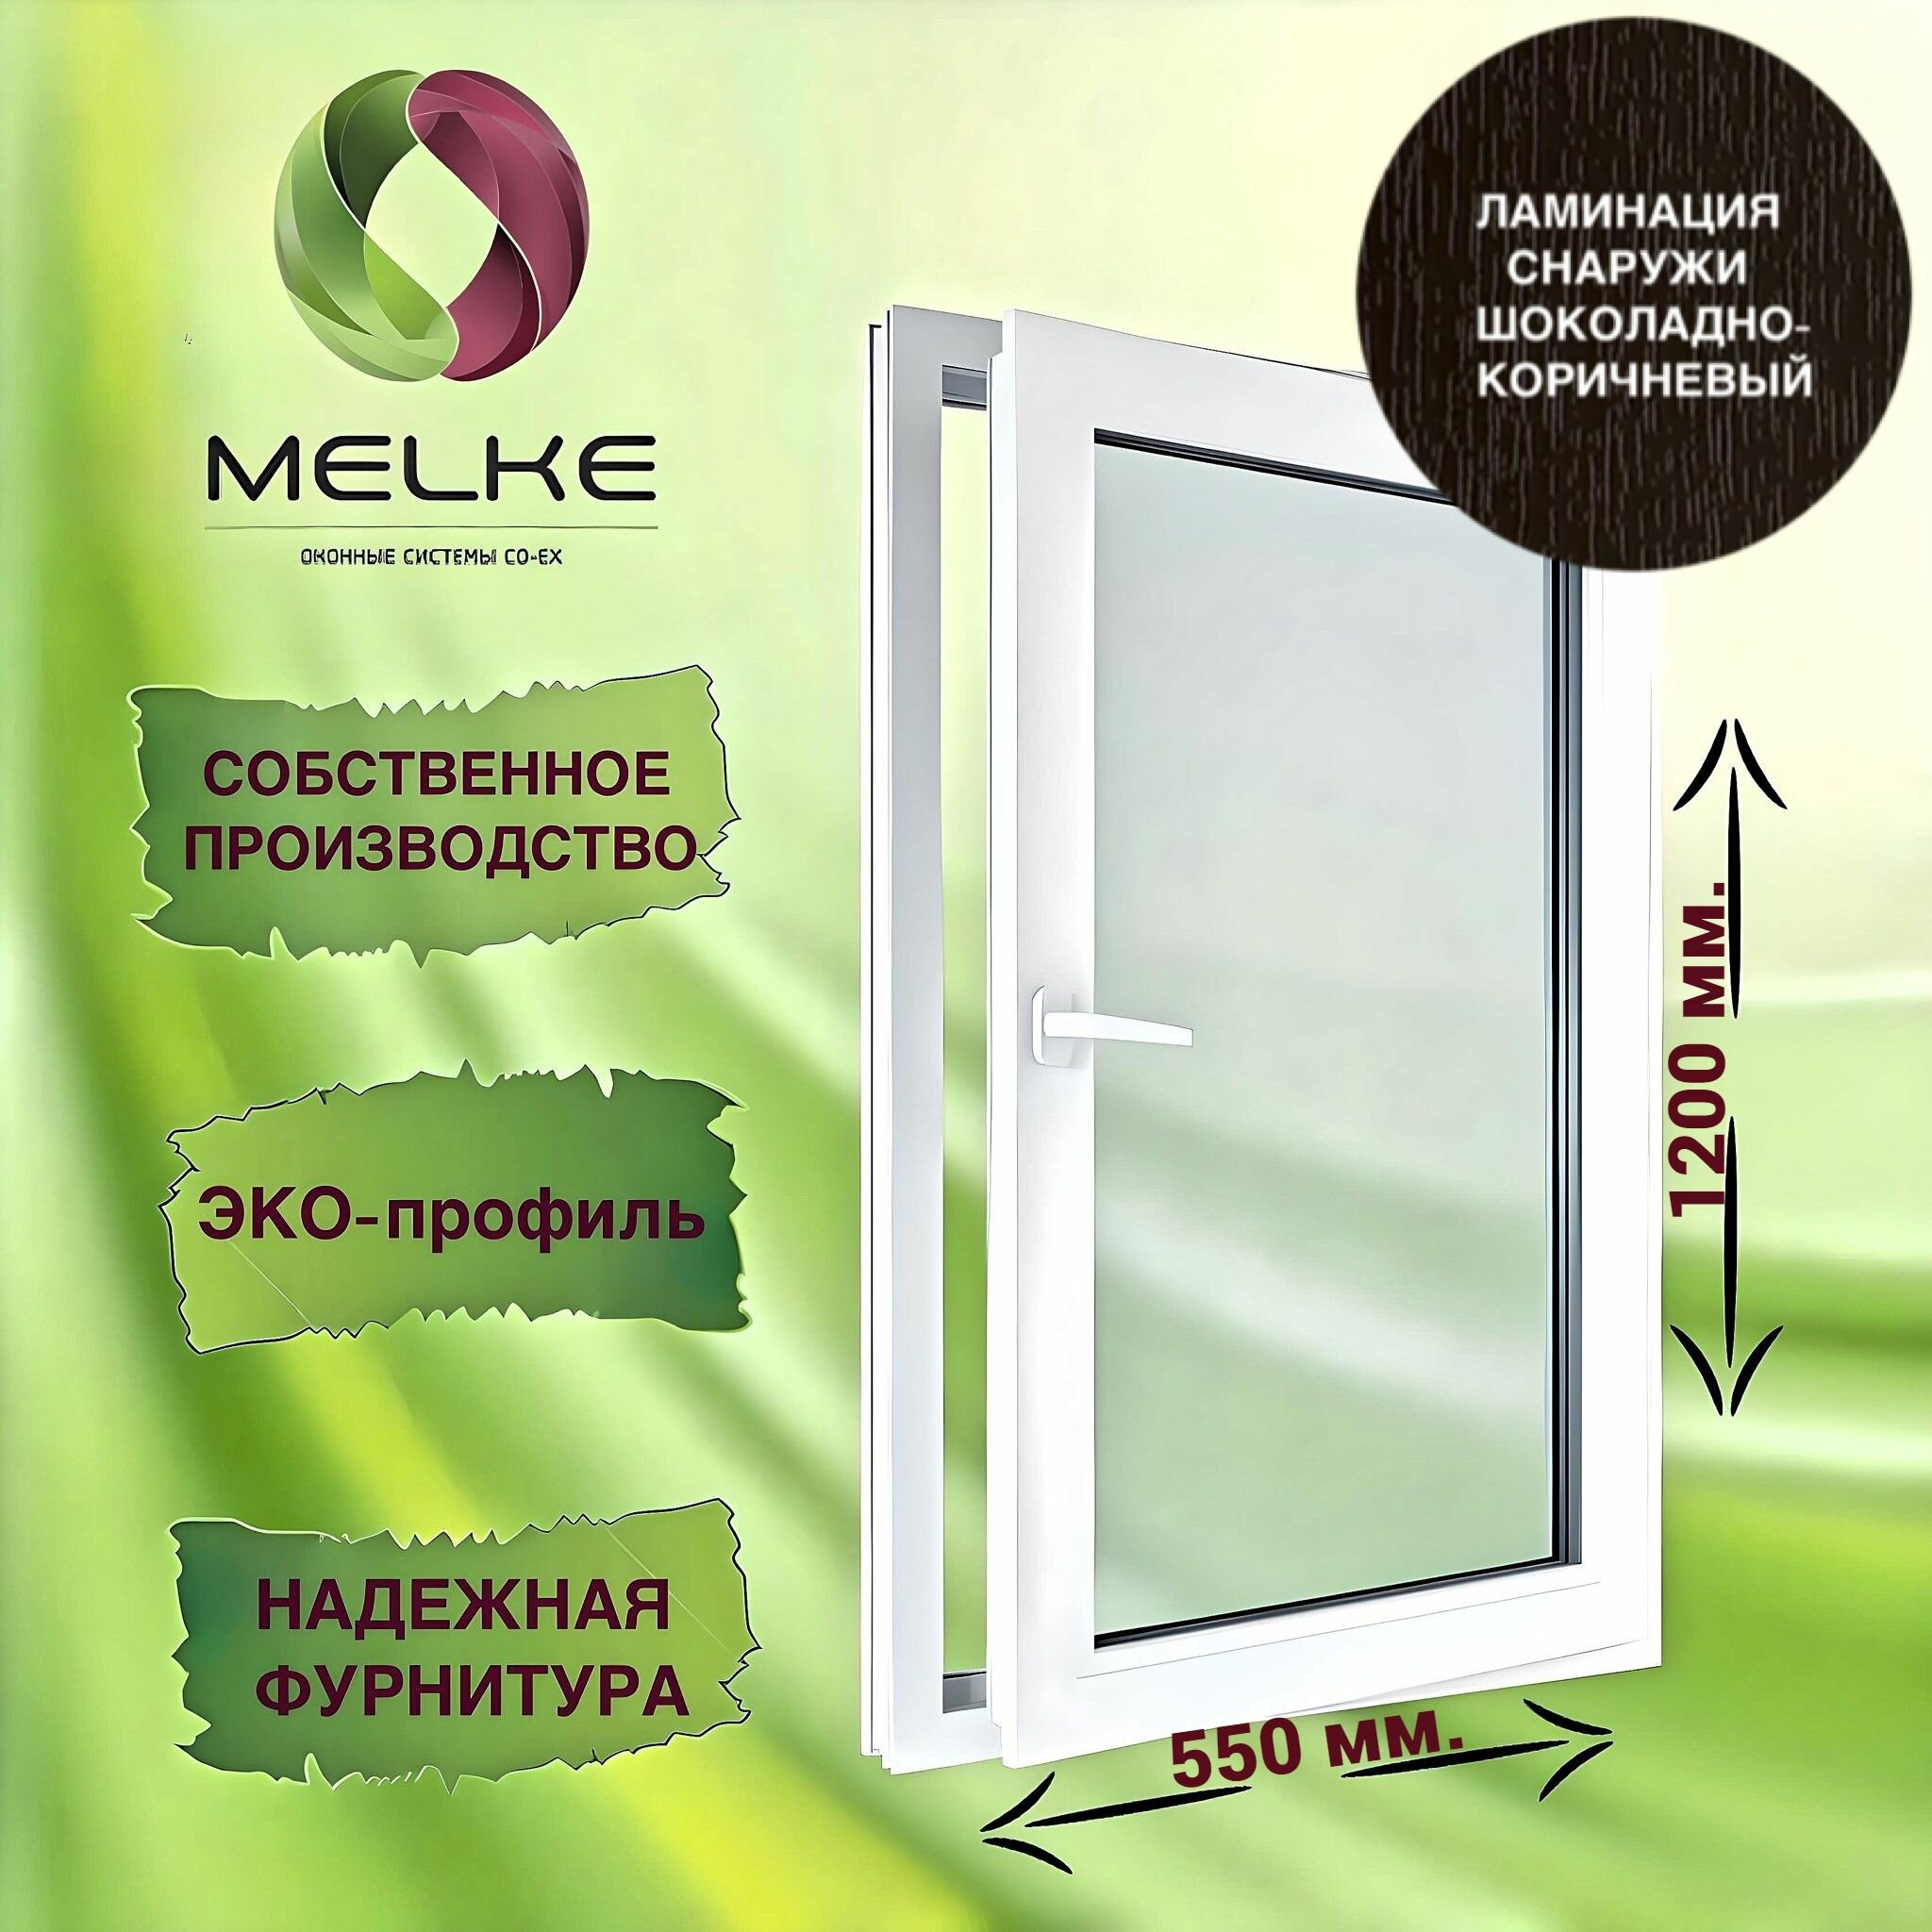 Окно 1200 х 550 мм, Melke 60 (Фурнитура FUTURUSS), правое одностворчатое, поворотно-откидное, цвет внешней ламинации Шоколадно-коричневый, 2-х камерный стеклопакет, 3 стекла